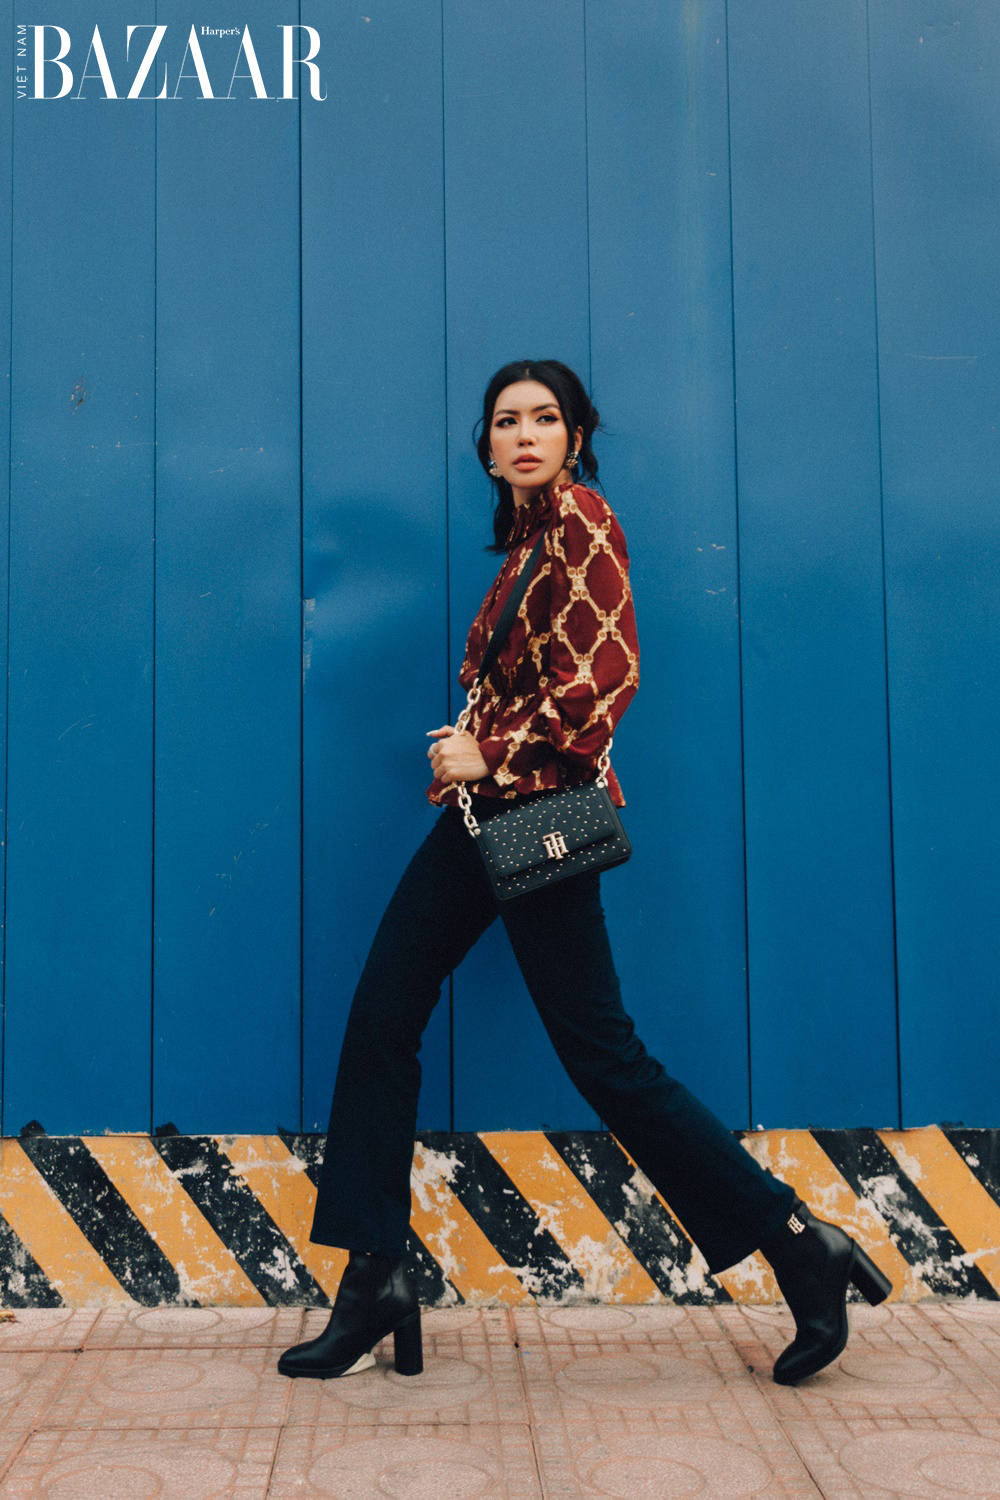 Harper's Bazaar_Siêu mẫu Minh Tú dạo phố ngày Tết_4